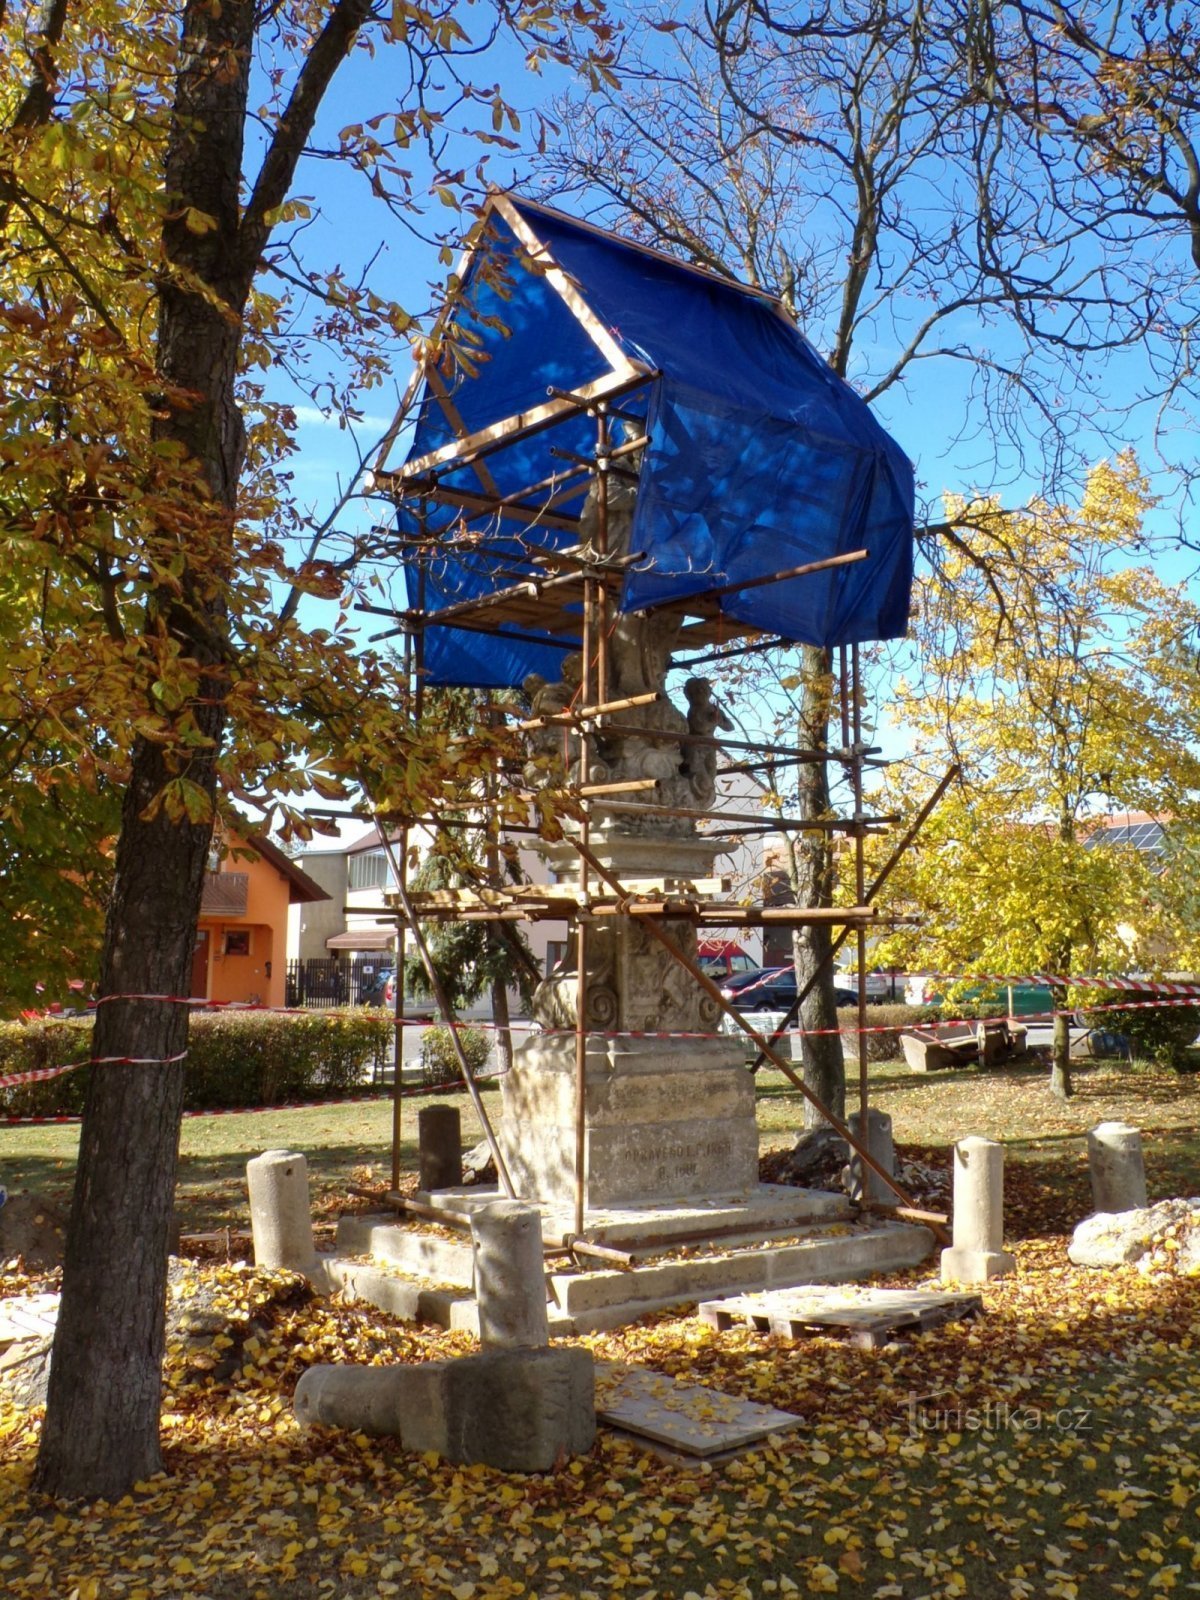 Popravak kipa sv. Ivana Nepomućkog (Sezemice, 20.10.2021.)